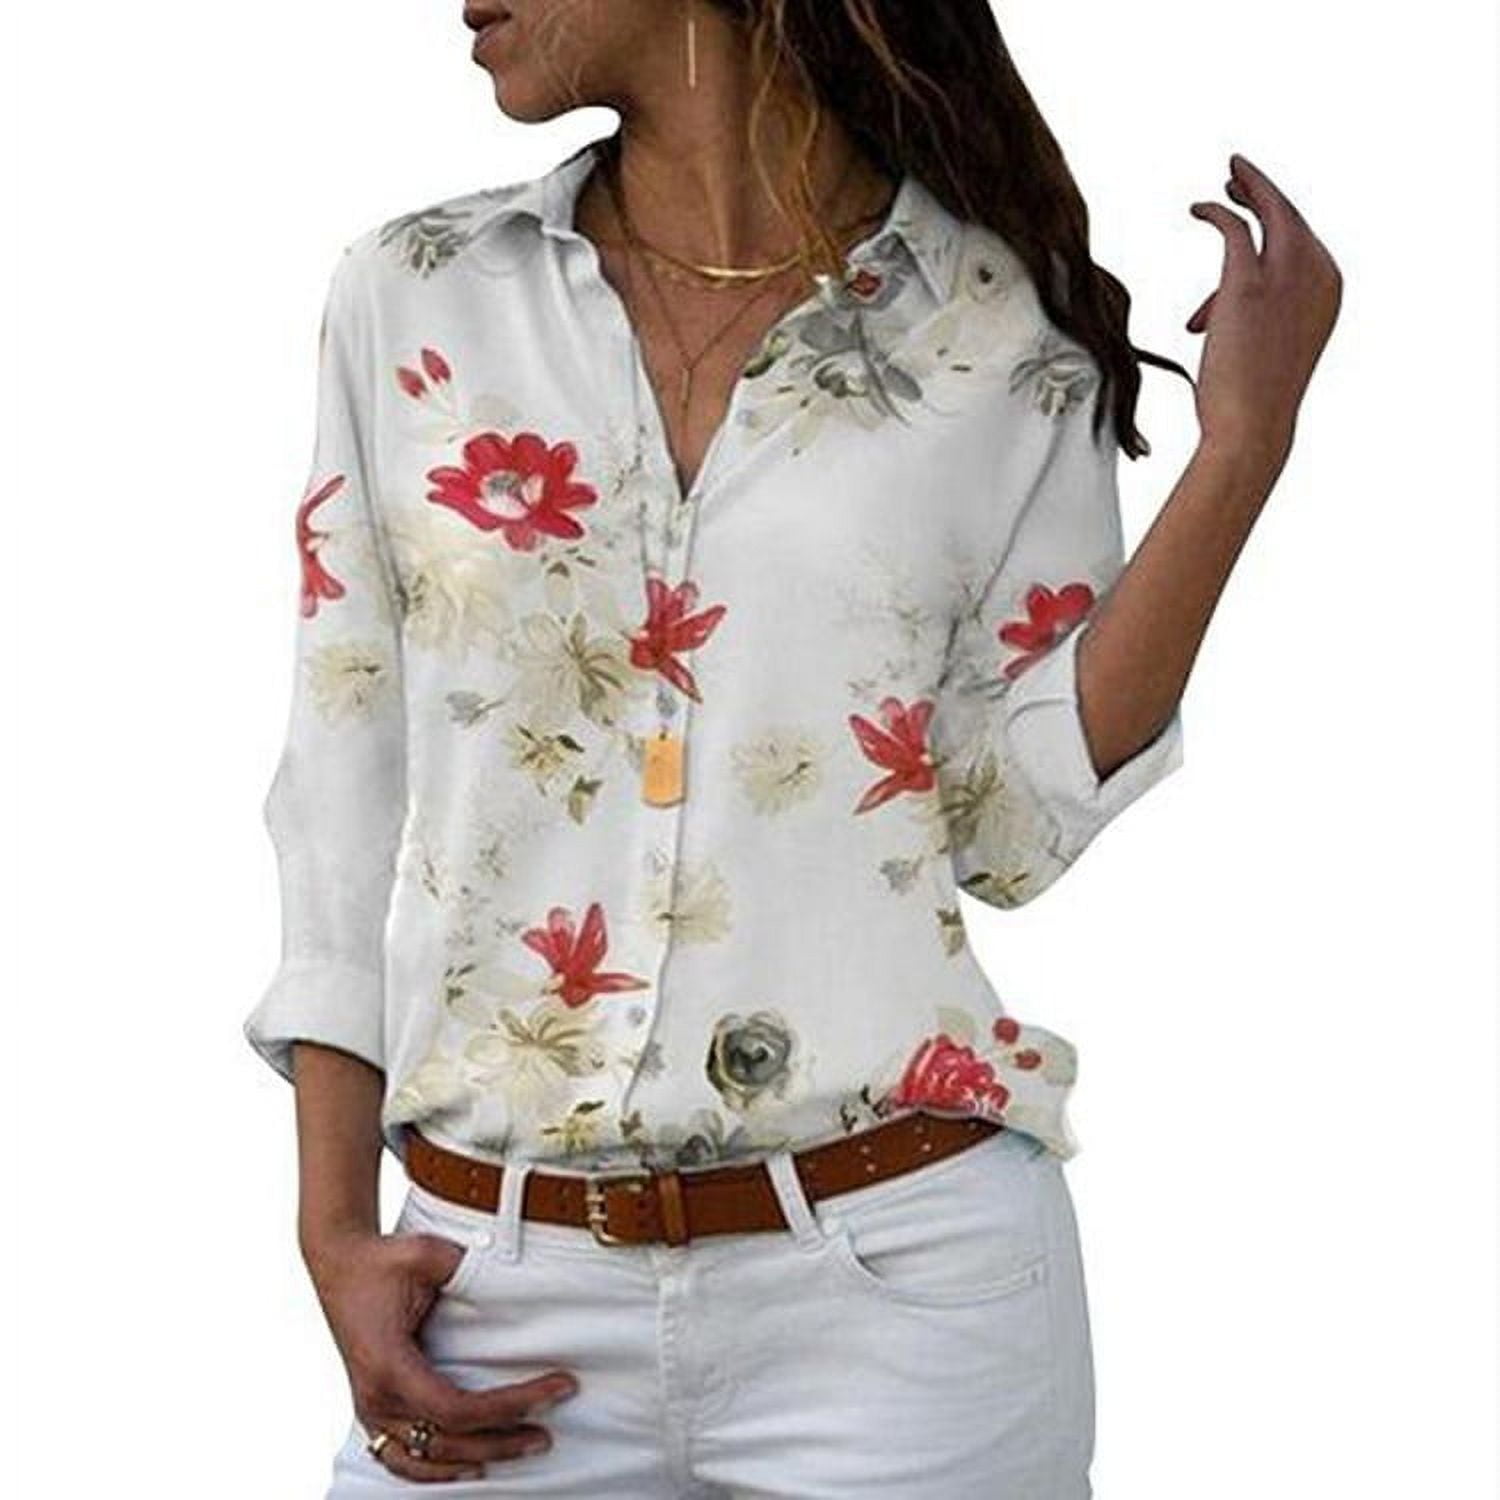 floral shirt women's shirt - Walmart.com